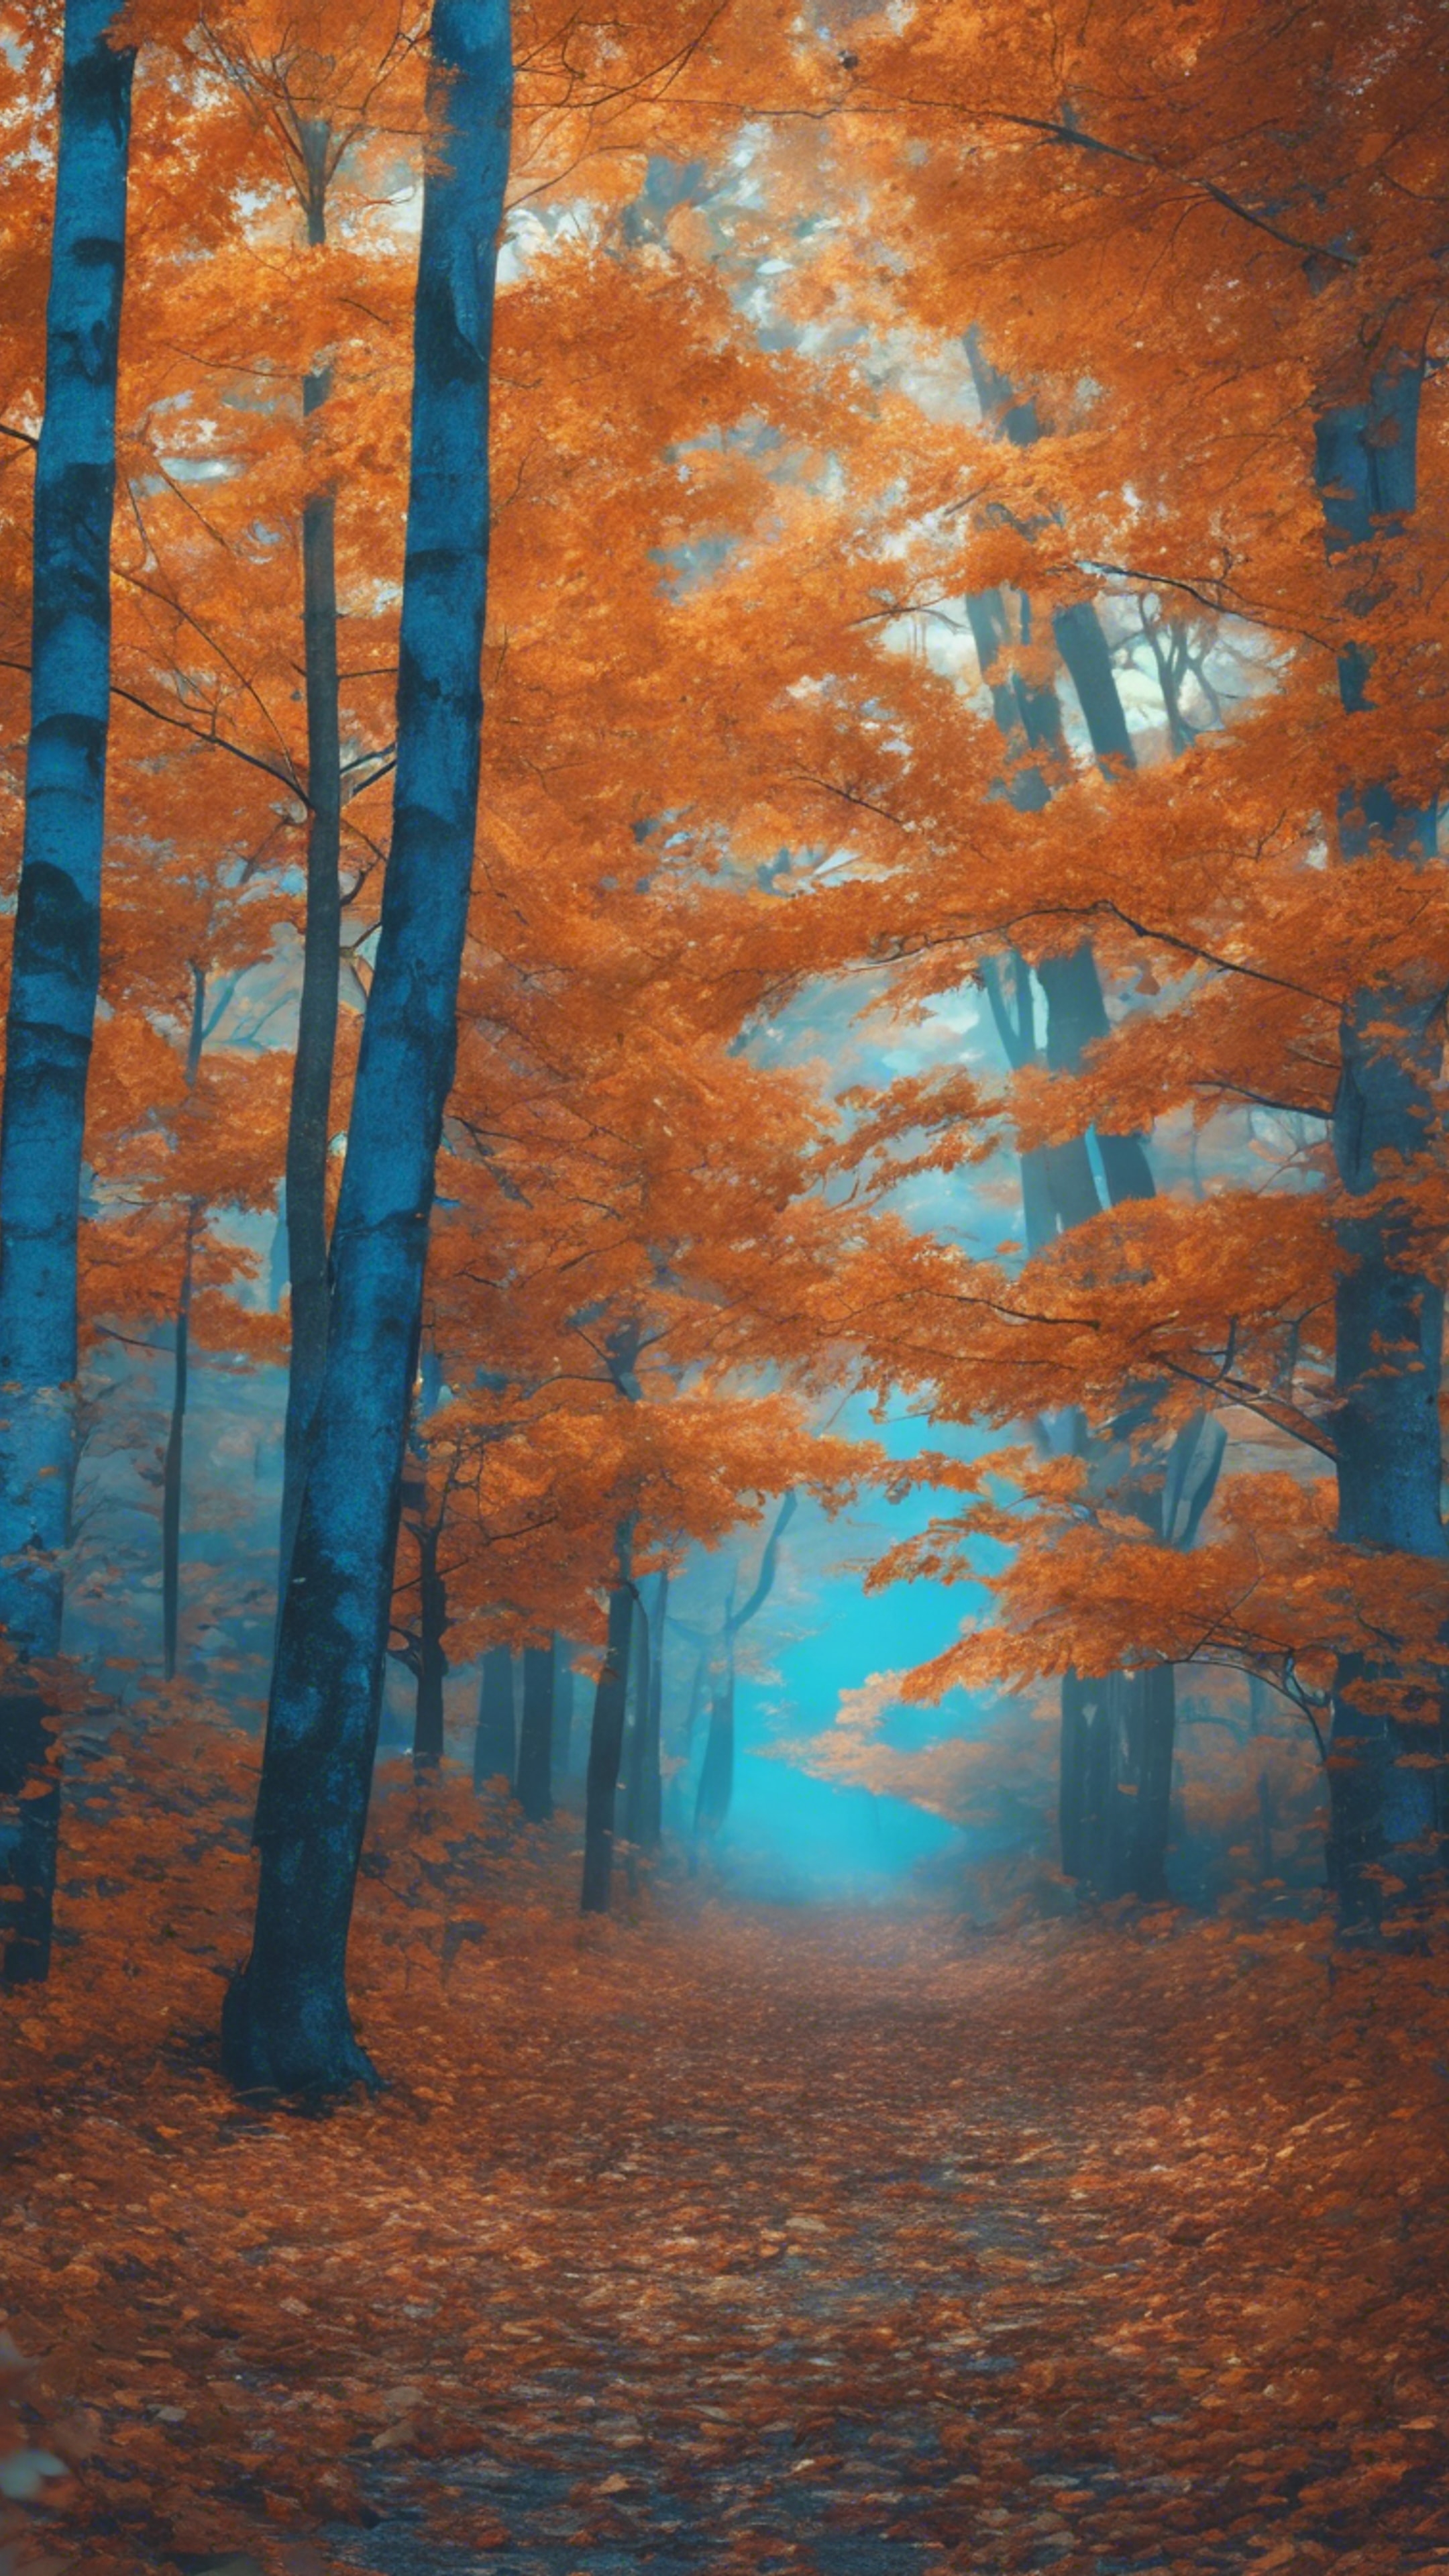 A lush blue forest under orange autumn leaves falling gently. Wallpaper[0c2ebd3bbdd5412f95df]